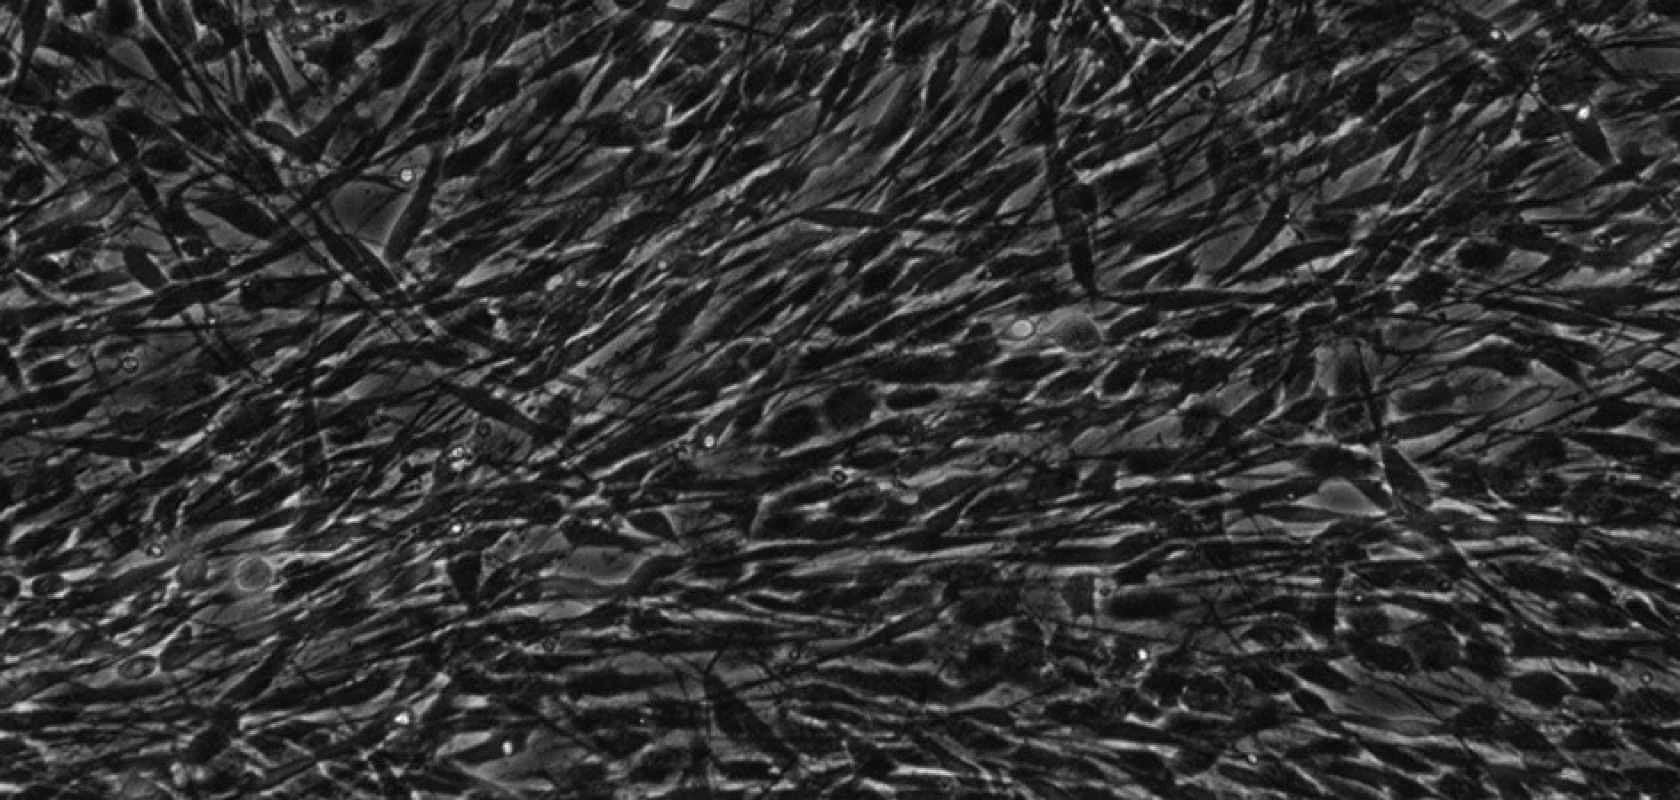 Kmenové buňky zubní pulpy izolované z perivaskulárního kompartmentu při 30. pasáži. Buňky jsou vřetenaté, s dlouhými výběžky a rozvinutým cytoskeletem. KBZP mají v průměru 12 - 18 μm. Mikroskop s fázovým kontrastem, zvětšení 200x.